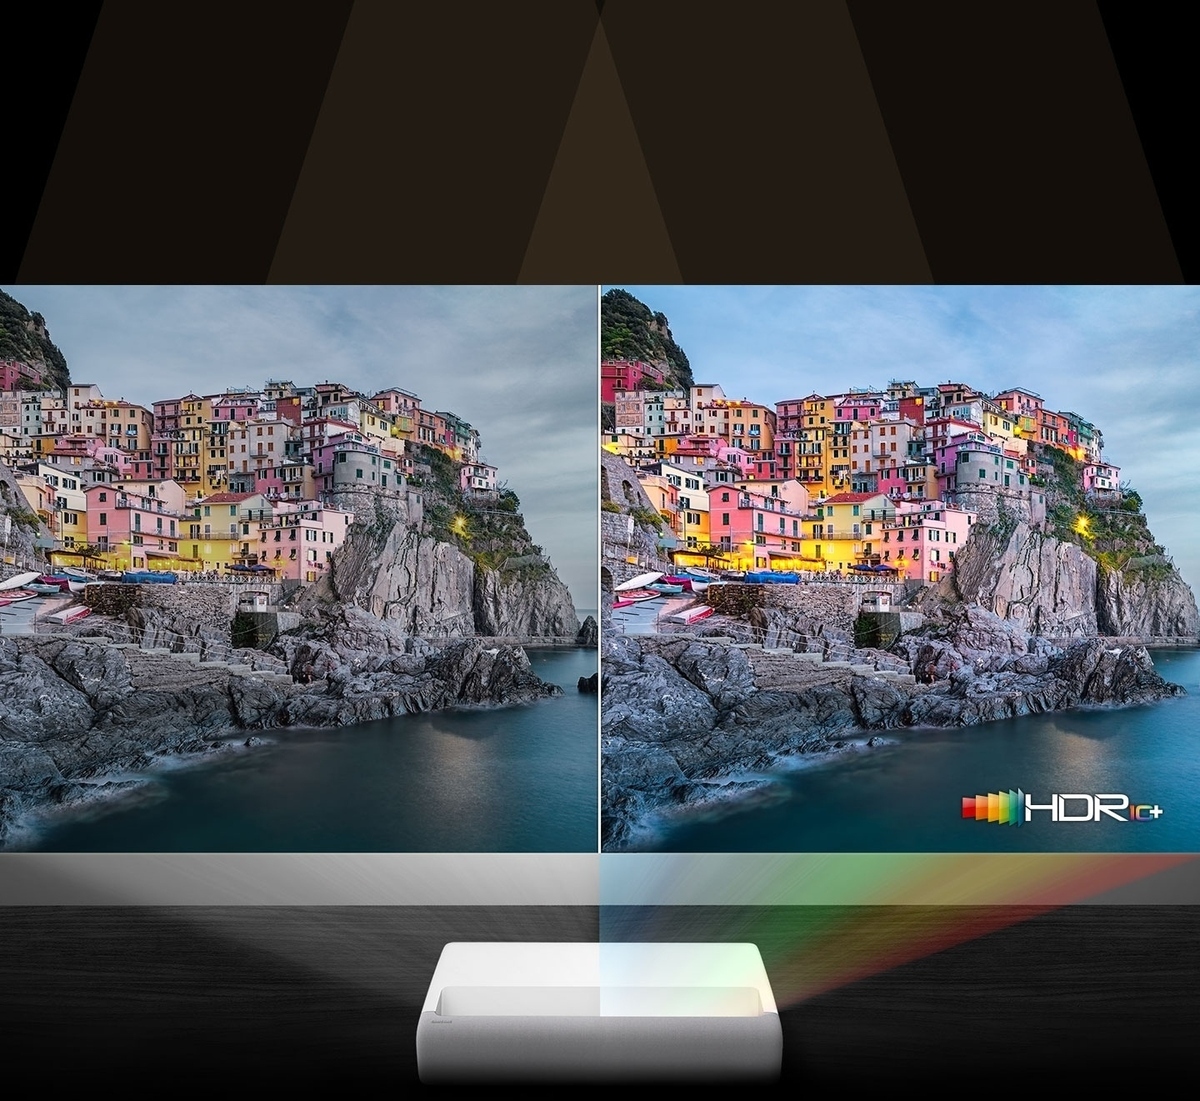 Con tecnología láser, The Premiere muestra dos pantallas para comparar hdr 10 plus y enfatizar la calidad de imagen 4K.